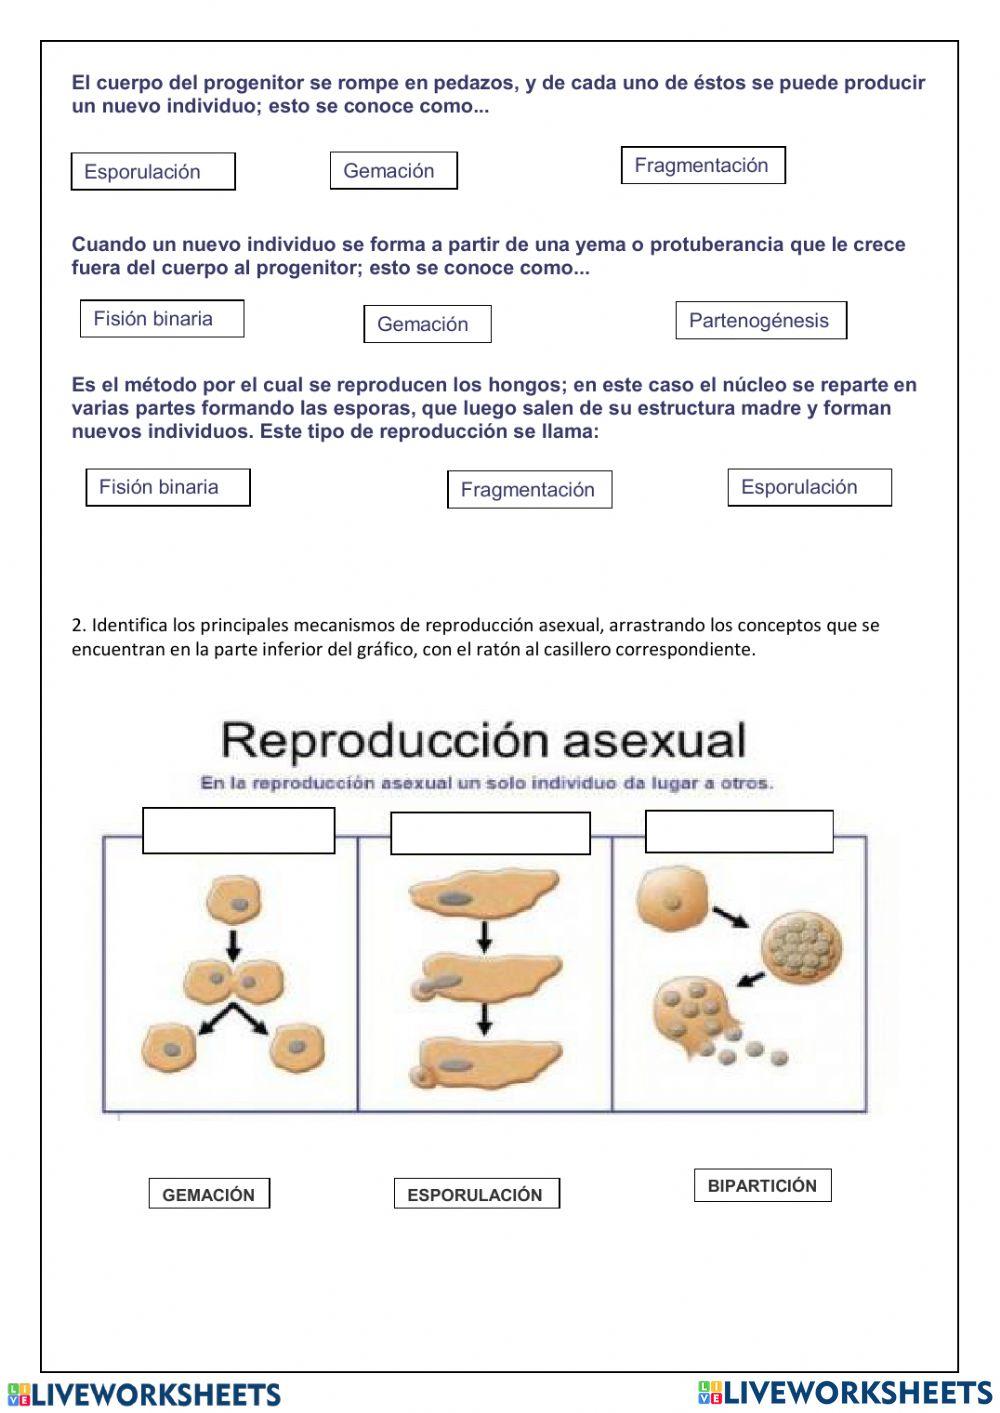 La reproducción asexual